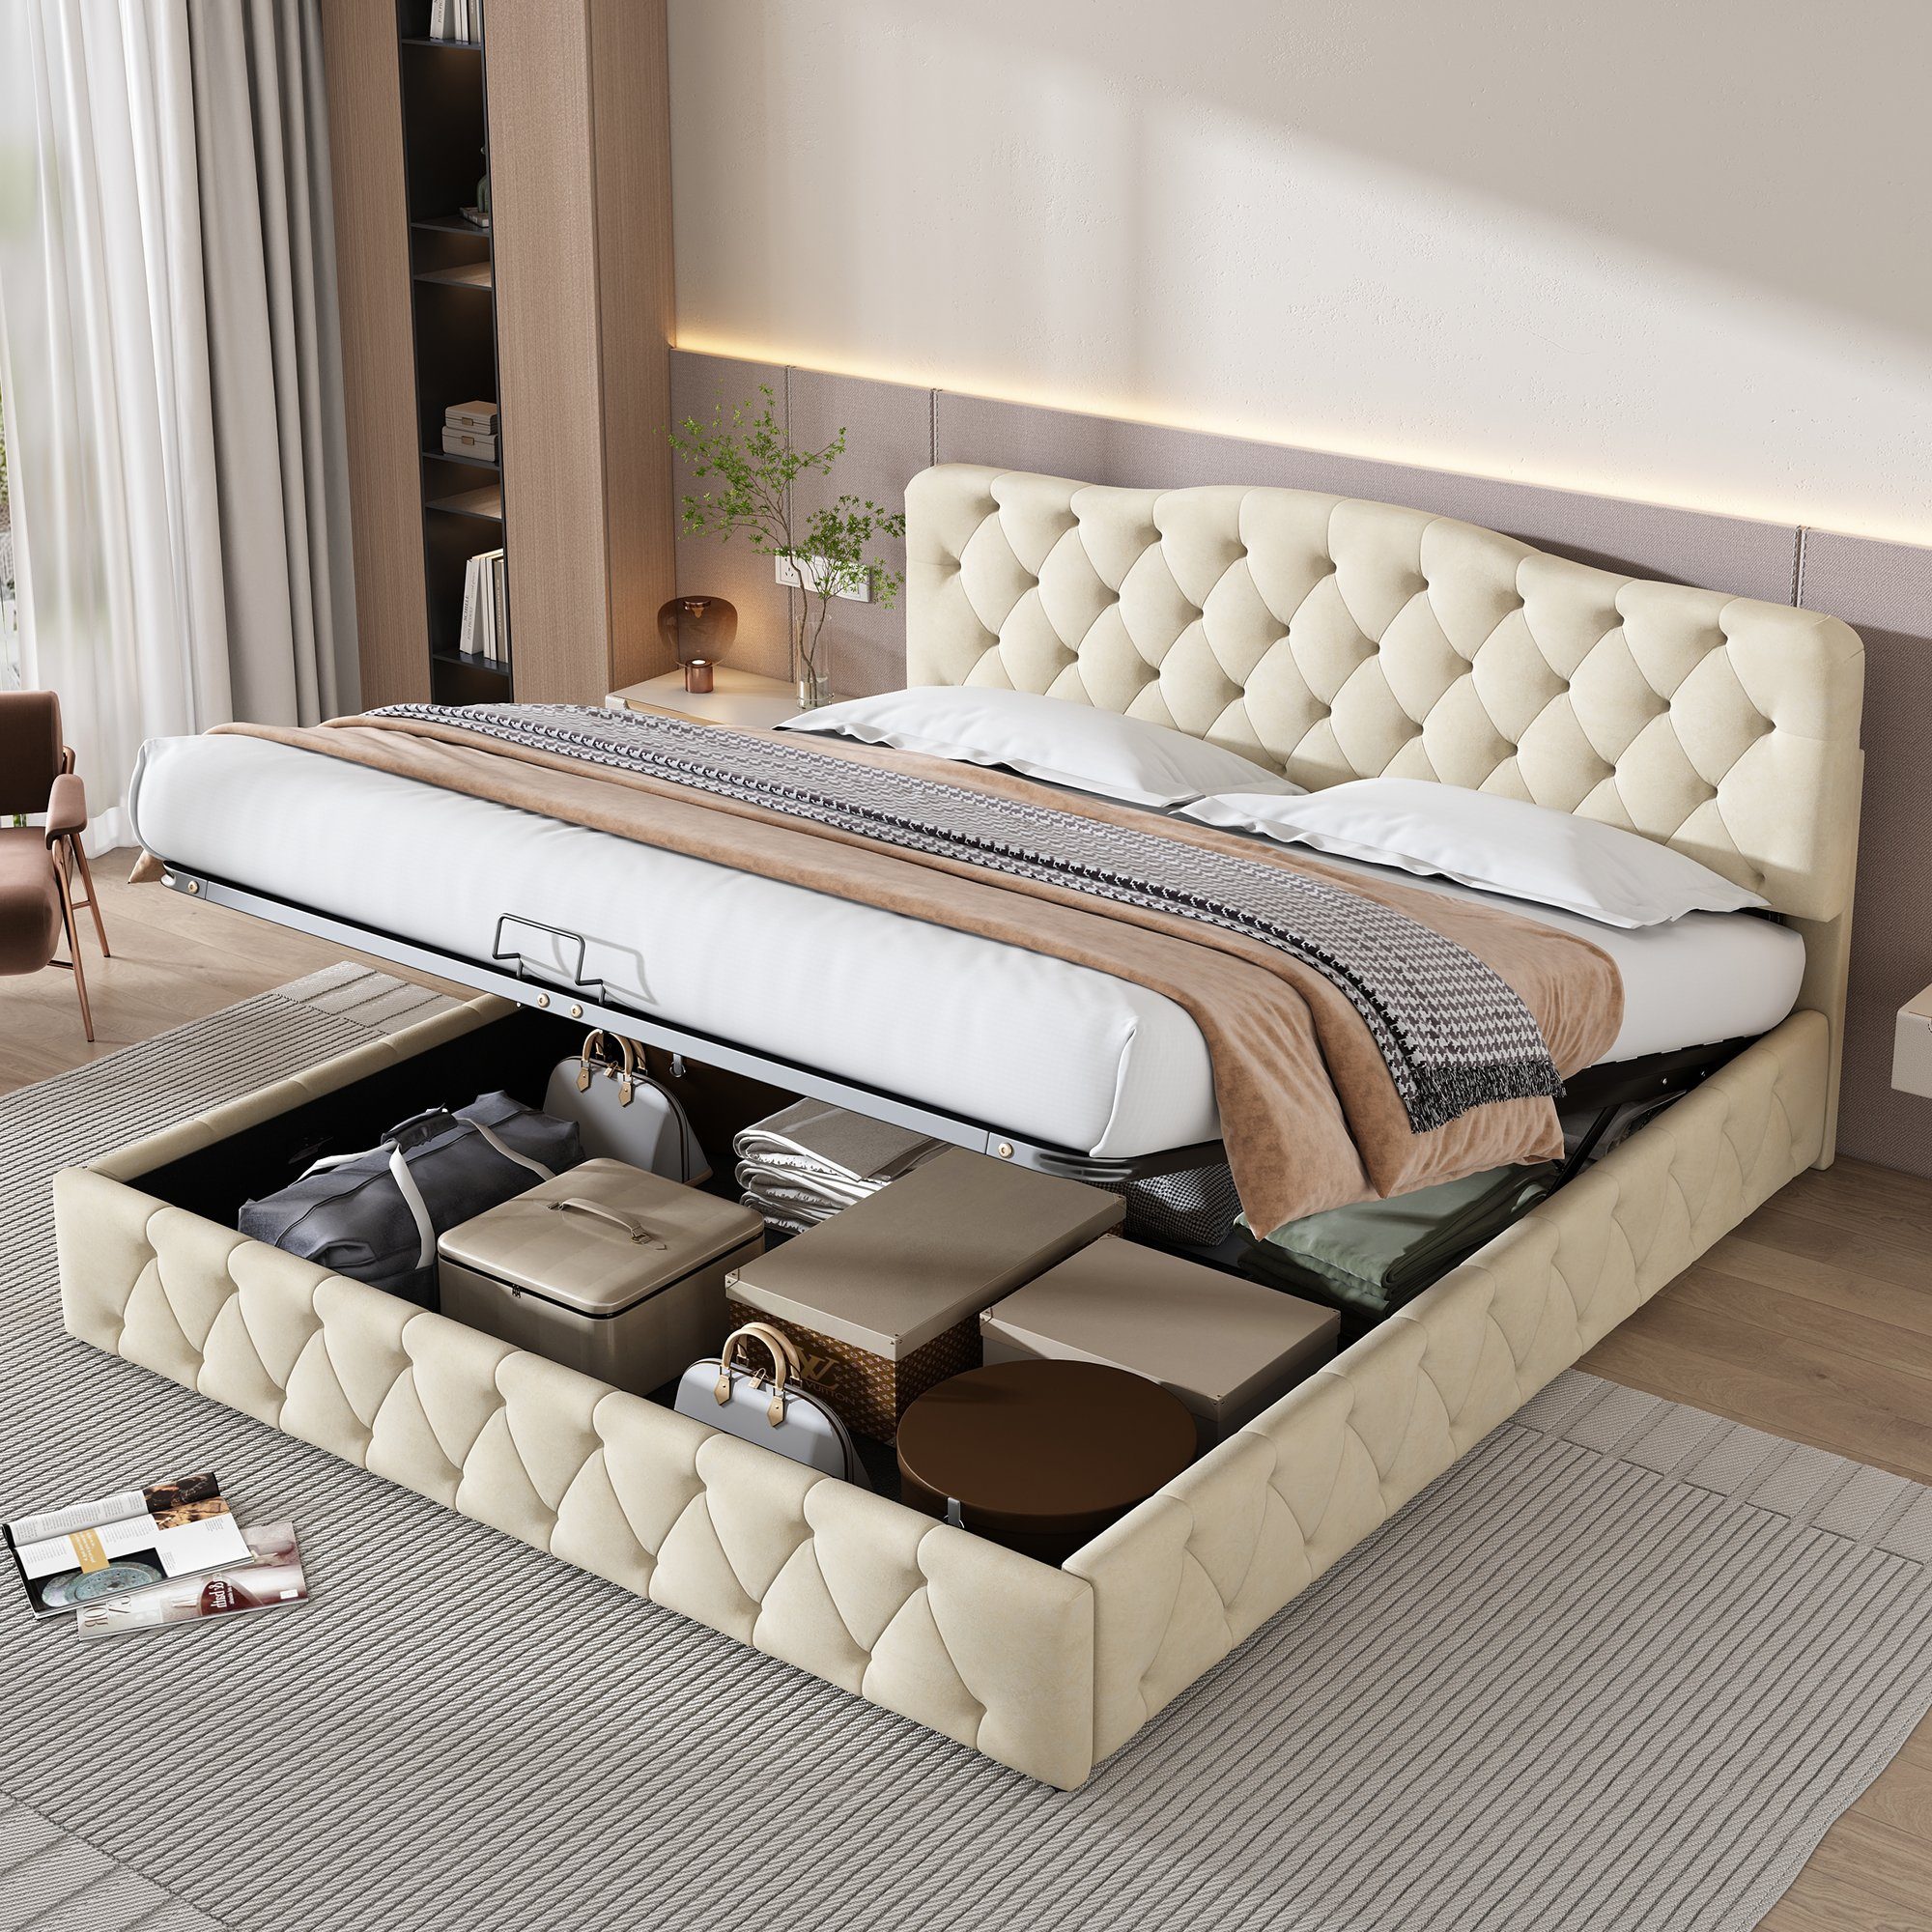 REDOM Polsterbett Doppelbett Bett hydraulisches Funktionsbett (mit Lattenrost und höhenverstellbares Kopfteil, 180x200 cm), Einfache Montage, Samt, beige